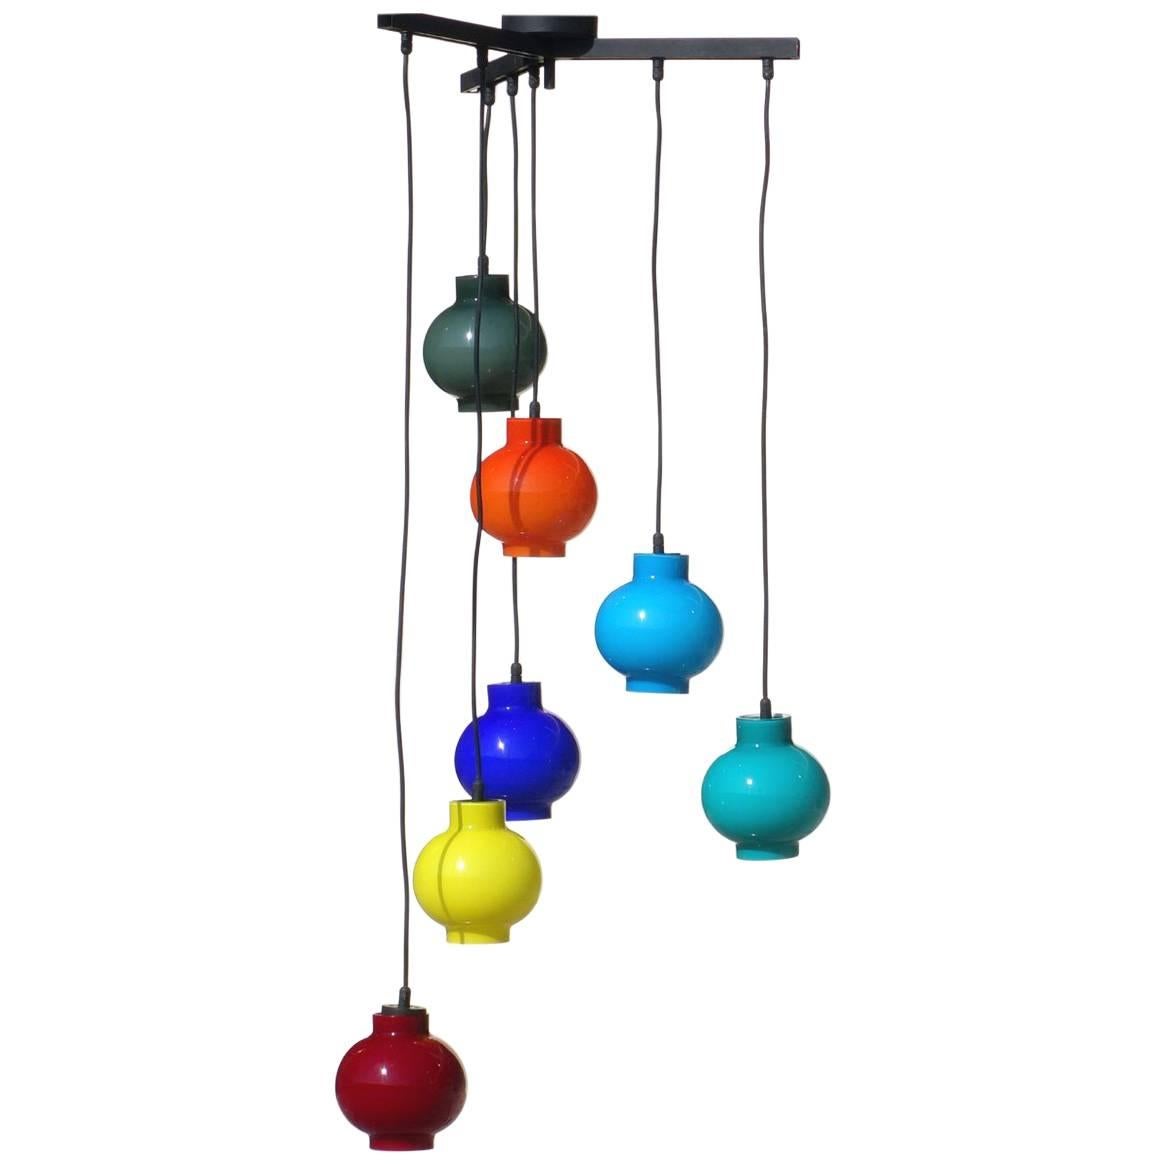 Vistosi Multi-Color Glass Pendant Midcentury 1950s Italian Design Ceiling Lamp